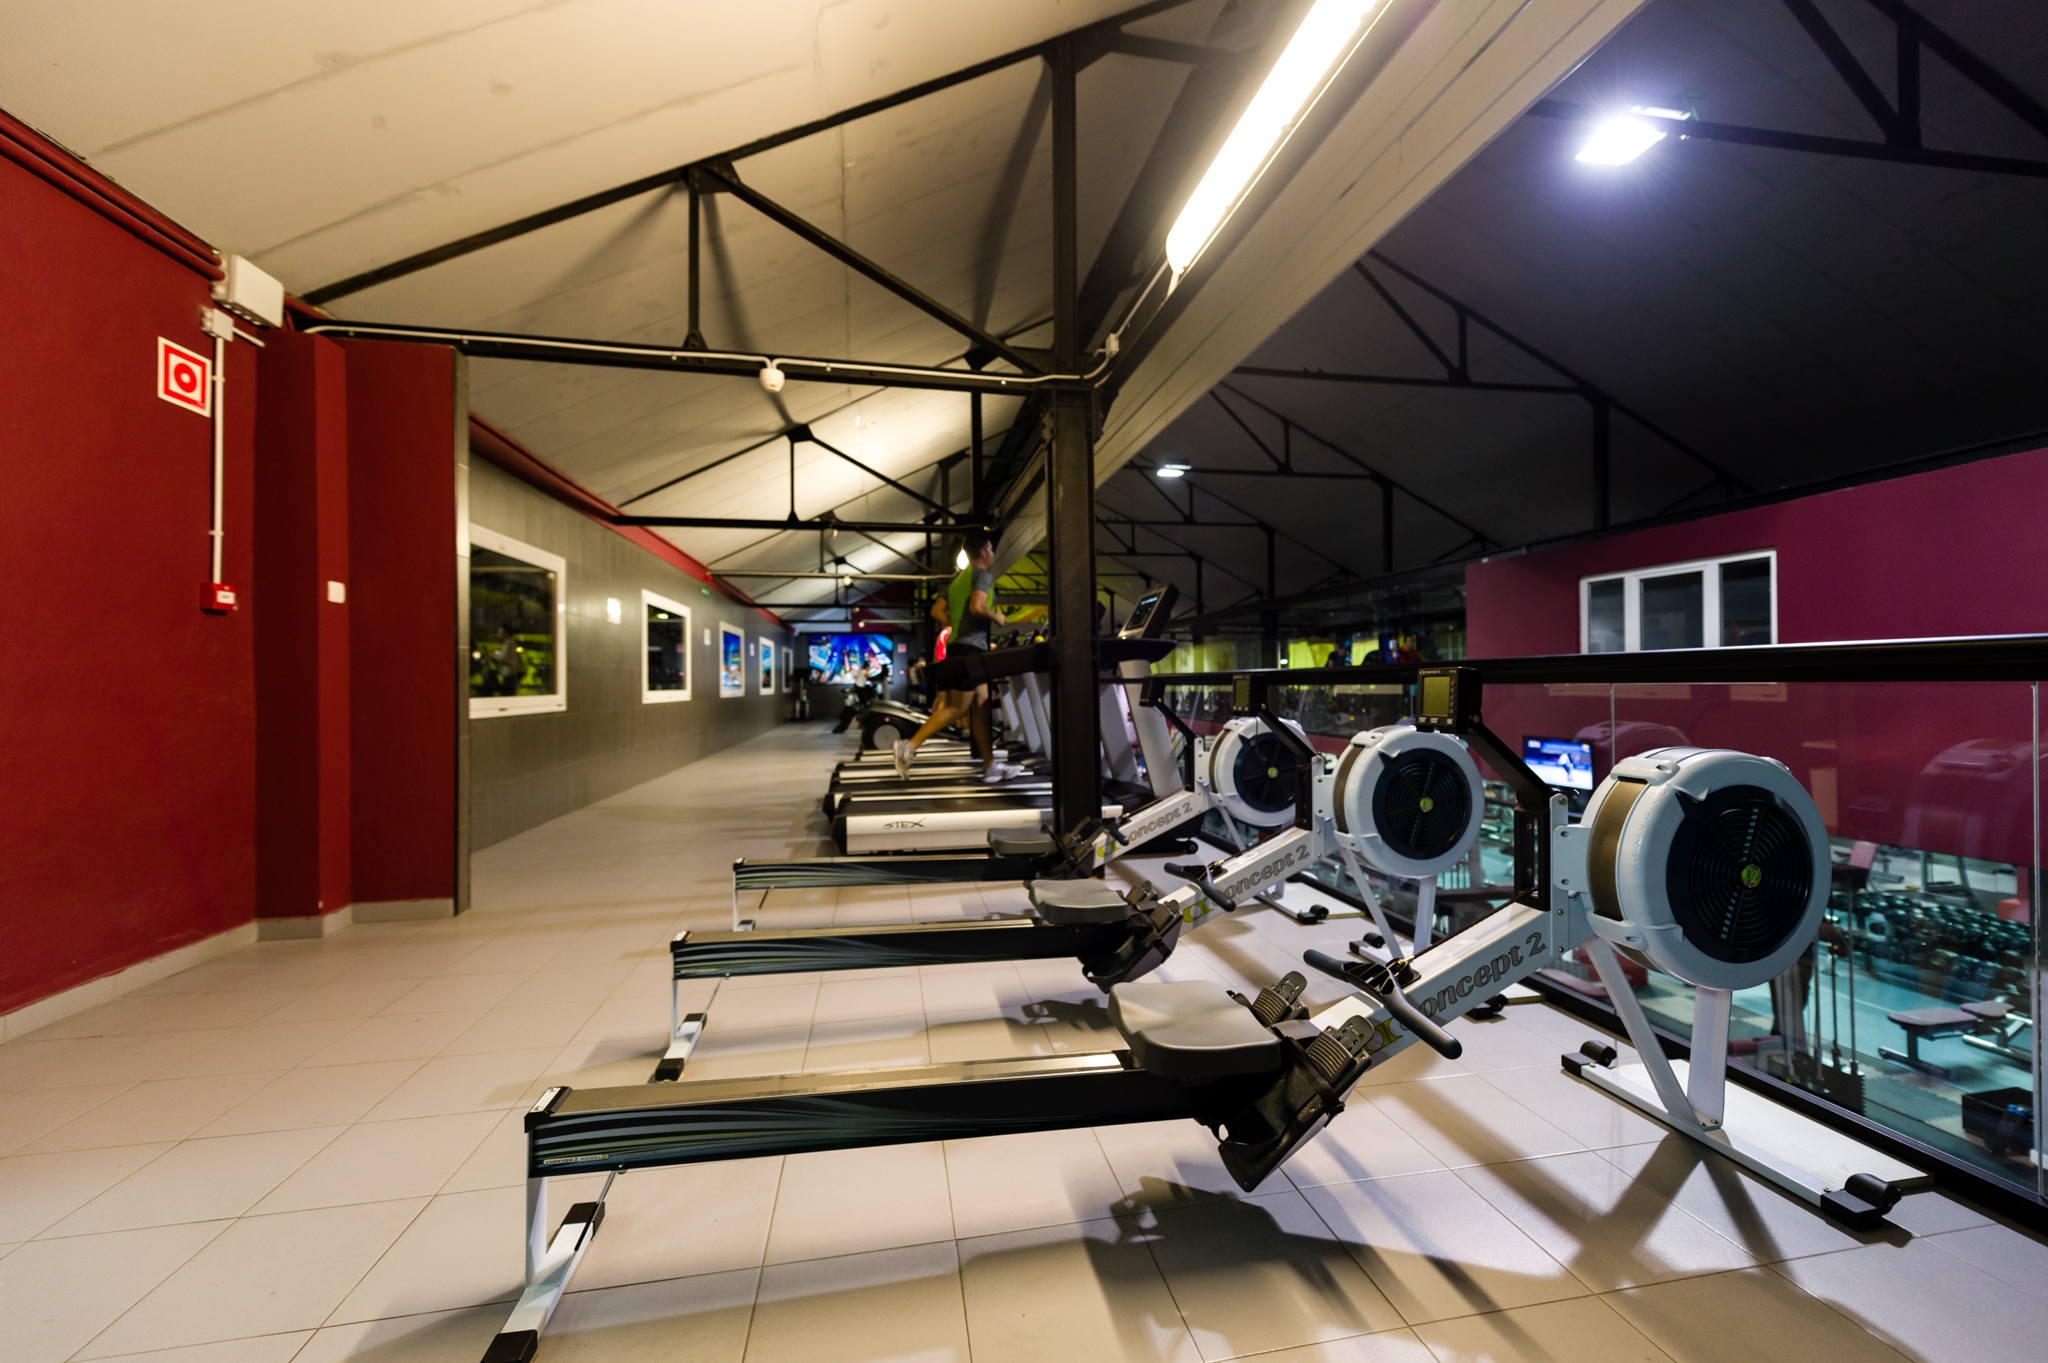 El Reformer o Pilates Máquina - ZEM - Ibex 35 Fitness Center